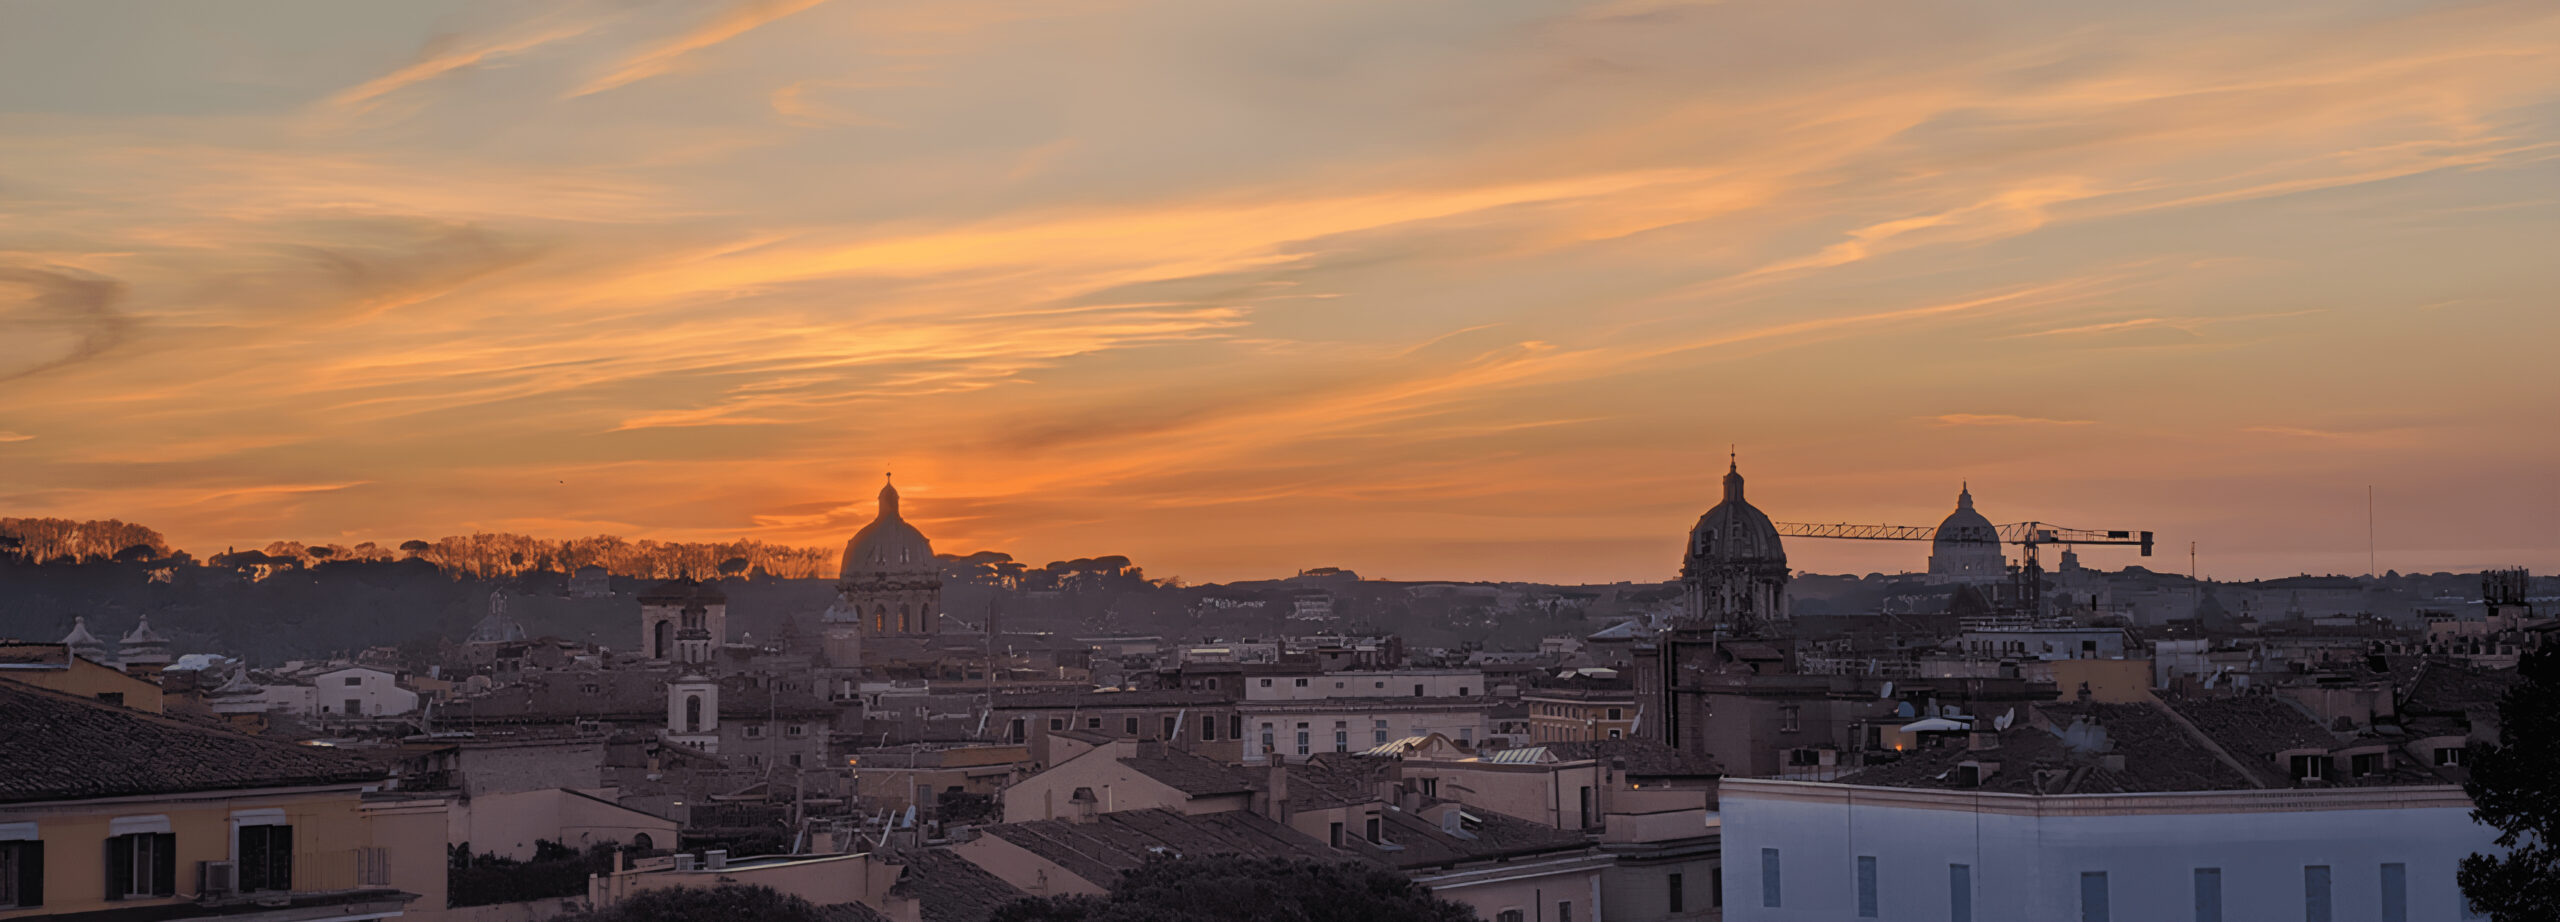 A imagem destaca a silhueta da cidade de Roma contra um céu vibrante de pôr do sol, com nuvens iluminadas por tons de laranja e amarelo. Os contornos das cúpulas e edifícios históricos são visíveis, oferecendo uma visão encantadora do horizonte da cidade ao anoitecer.